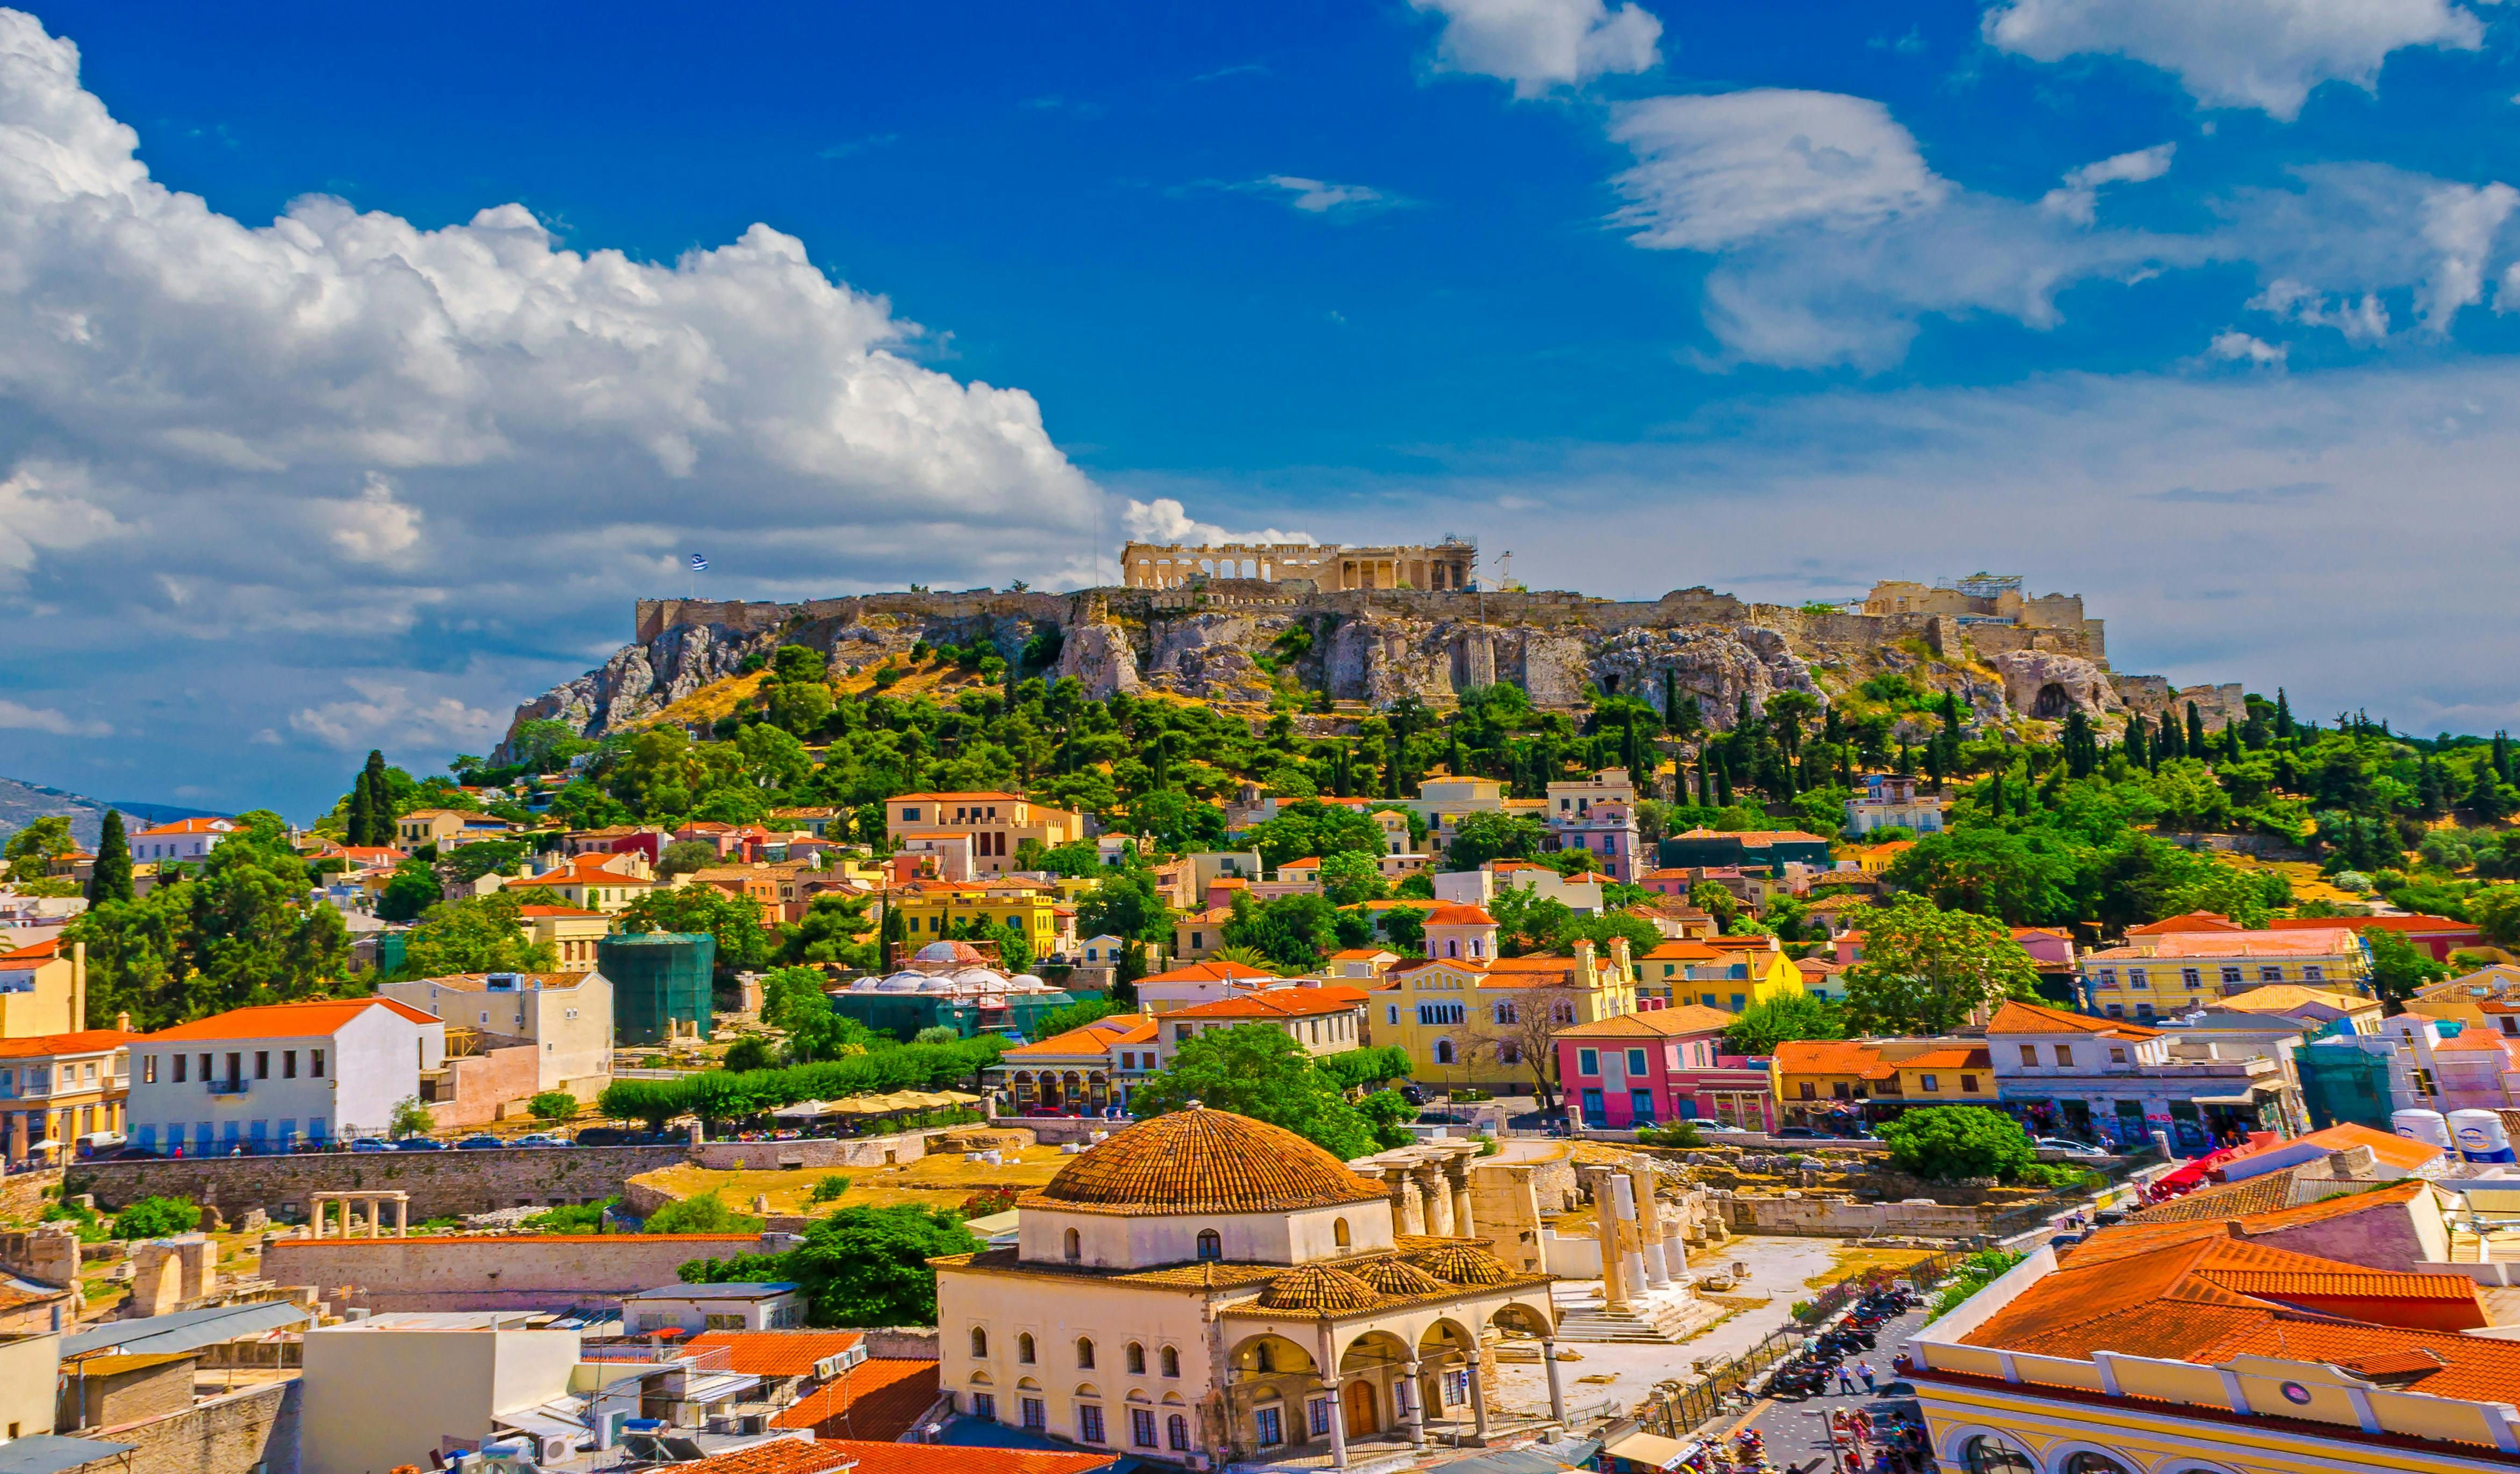 Visita turística privada a Atenas y el Pireo con audioguía